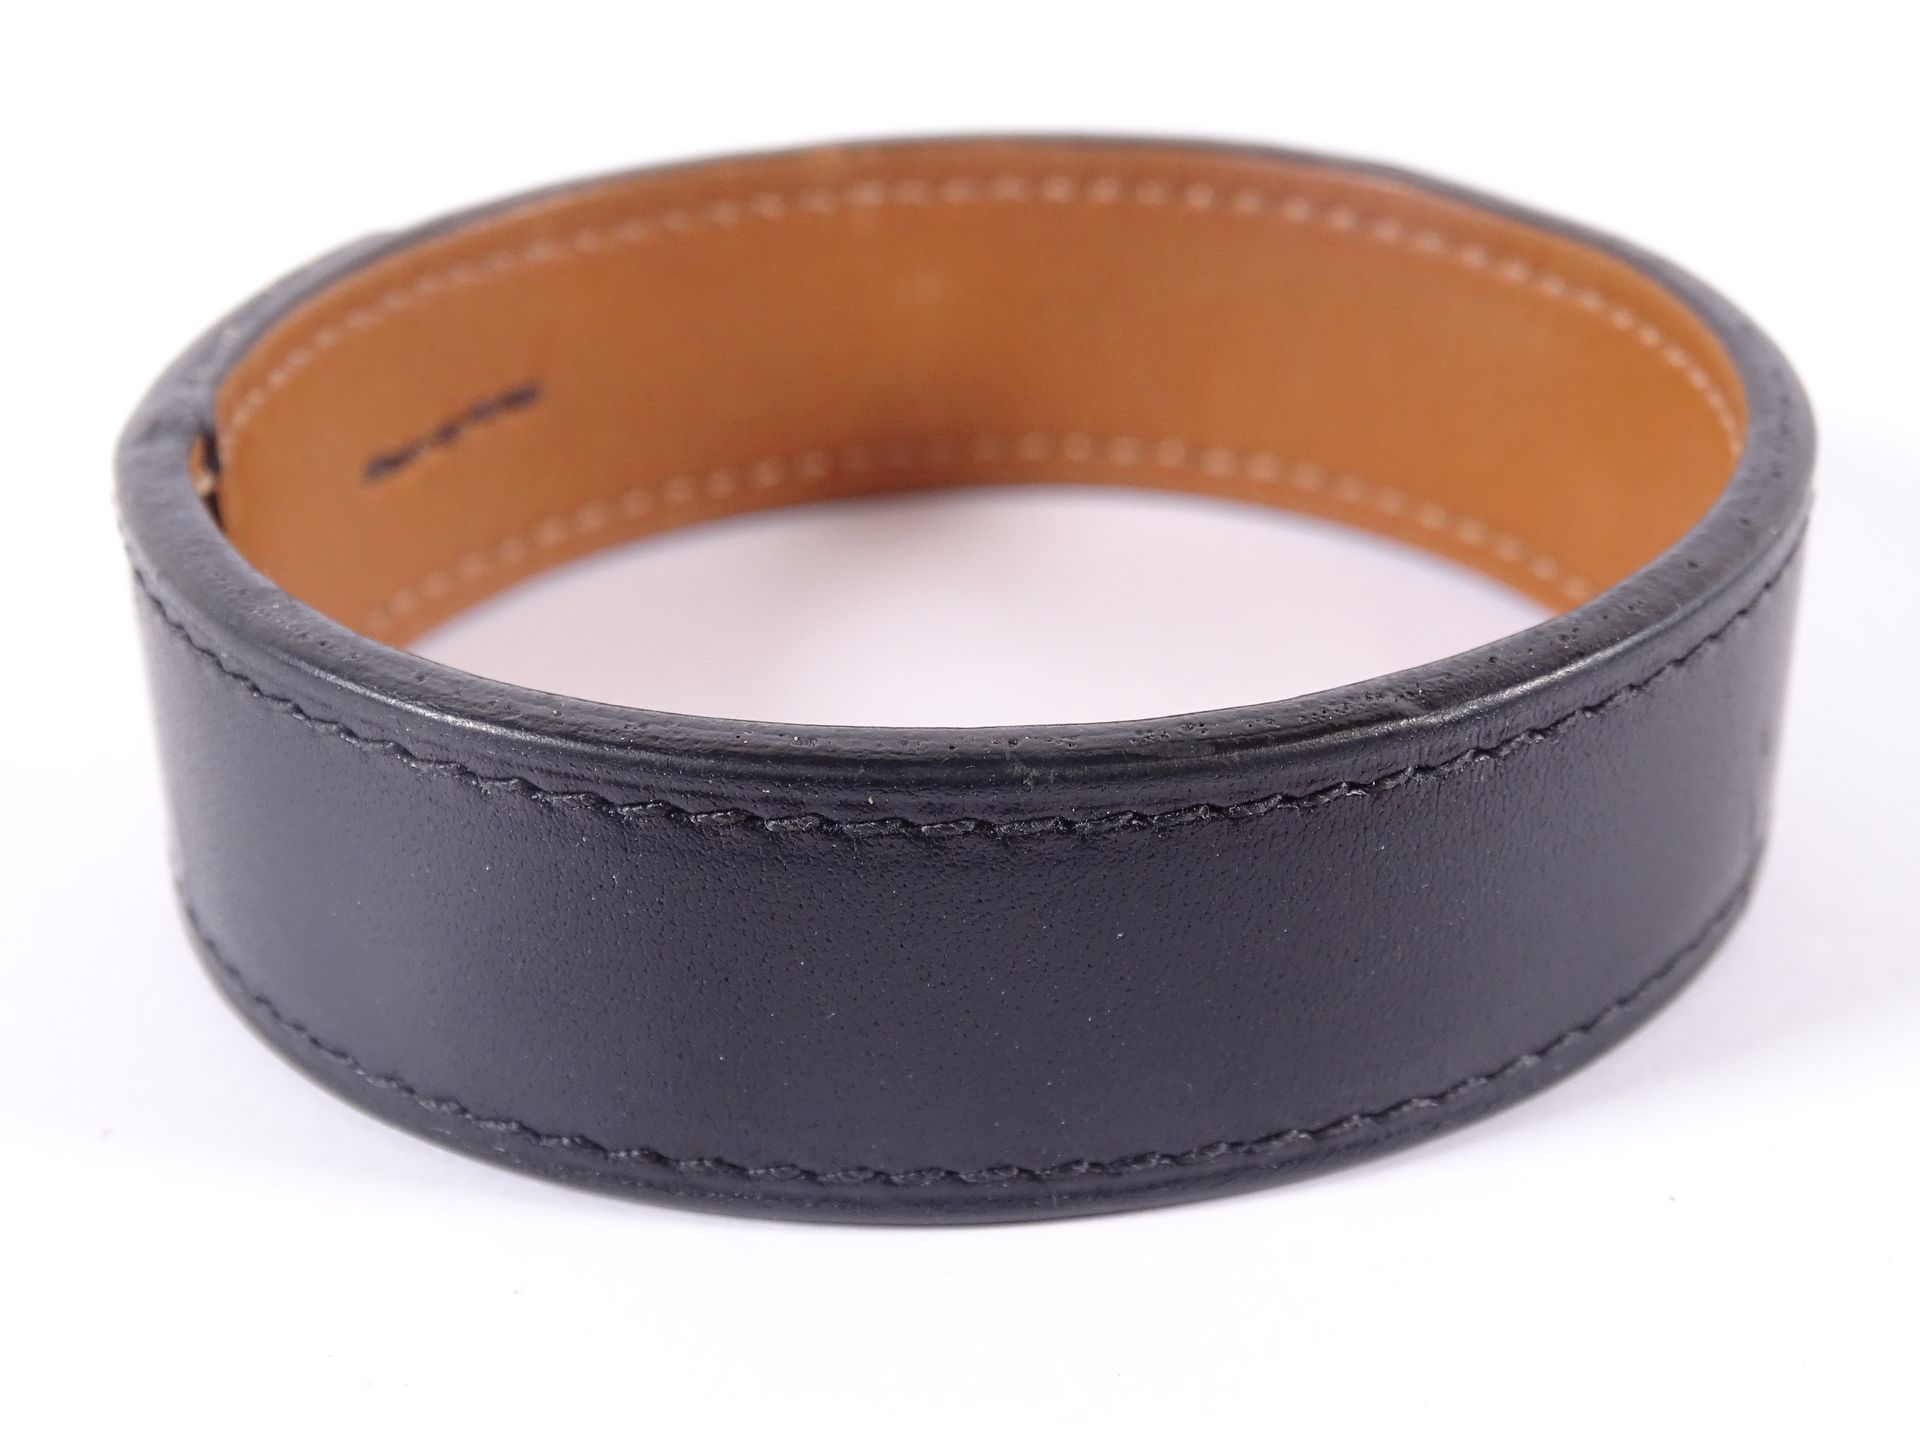 HERMES Bracelet en cuir noir. Taille S.

Diamètre : 7,5 cm.